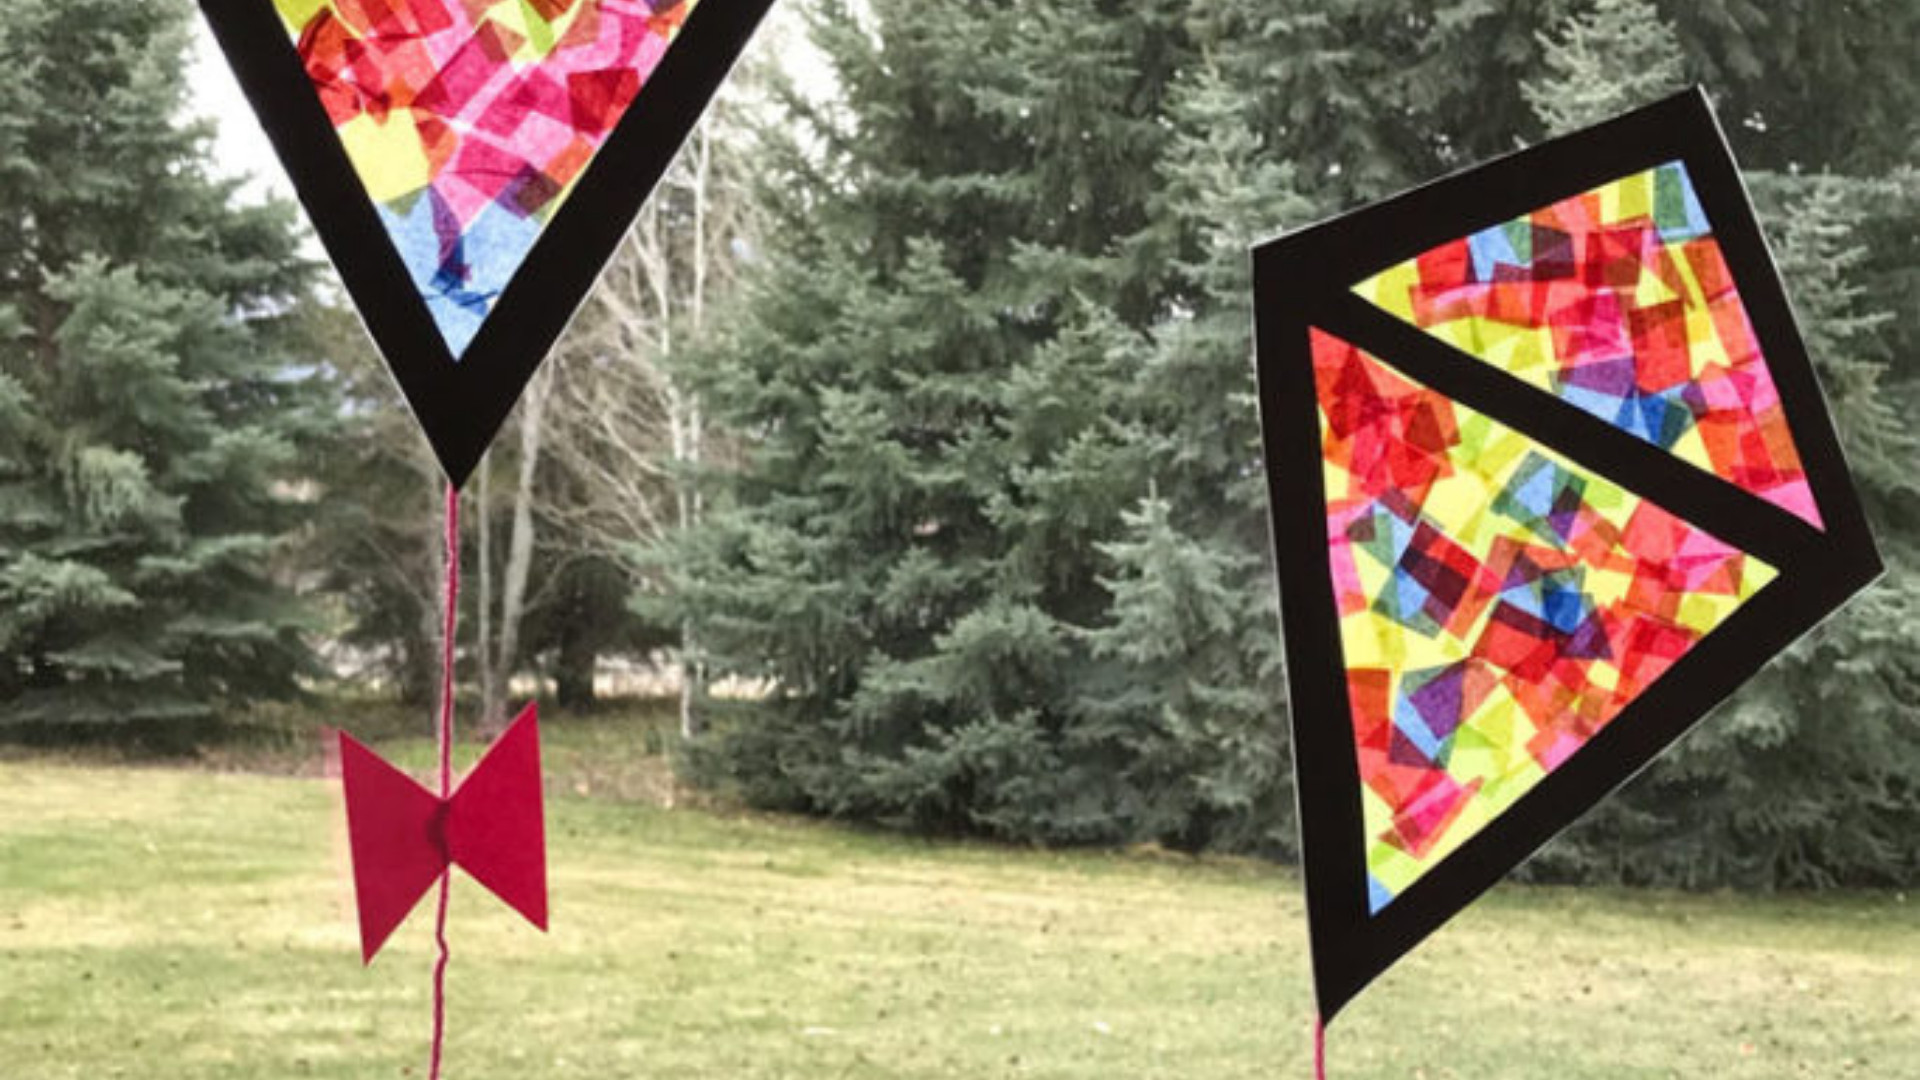 DIY Kite For Kids
 6 Fun Kids Kite Crafts diy Thought